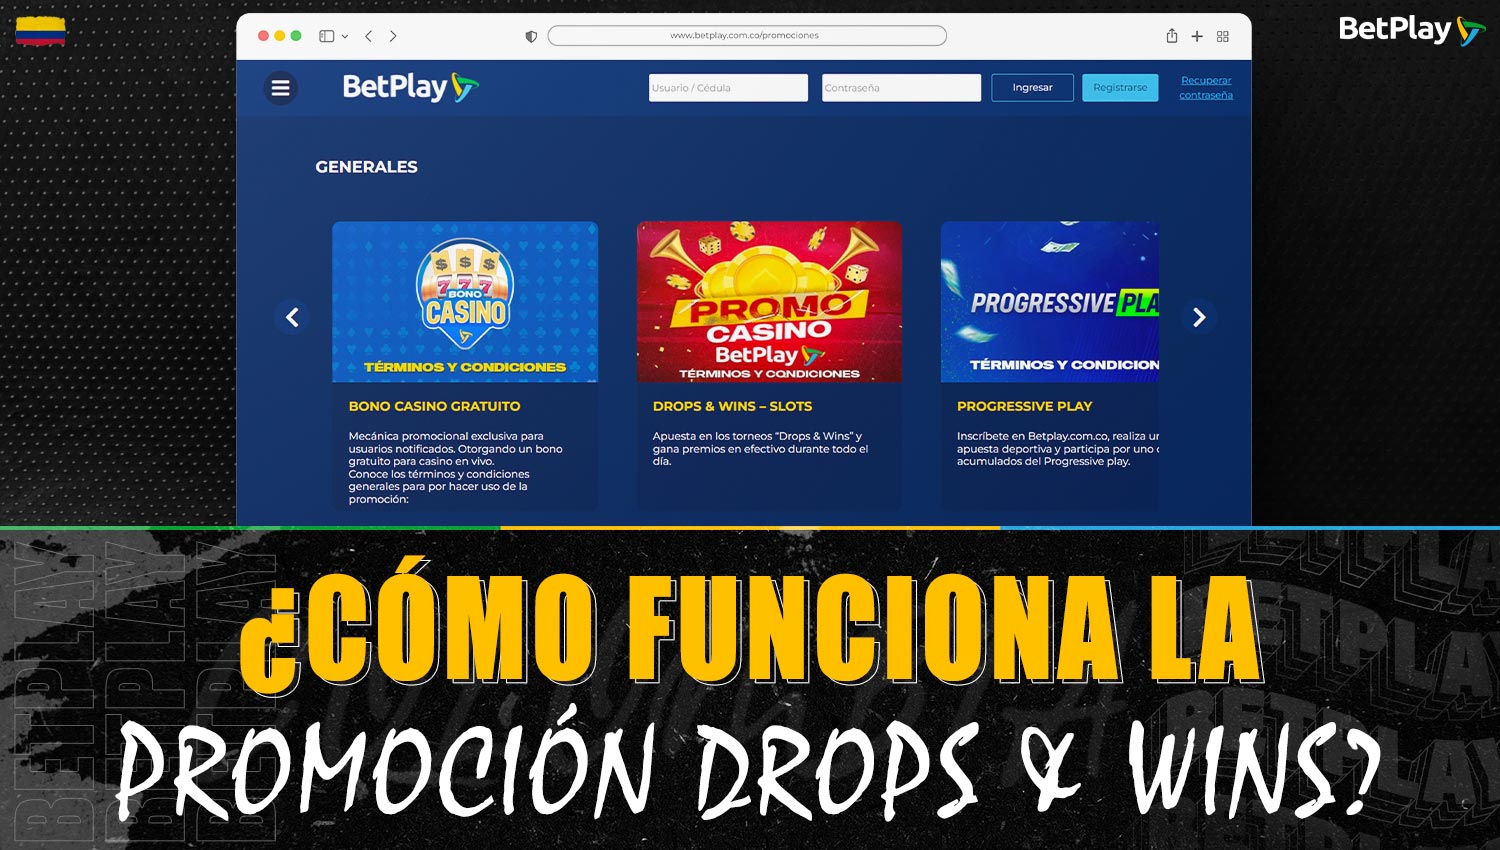 Descripción detallada de cómo funciona la promoción "Drops and Wins" en la plataforma Betplay Colombia